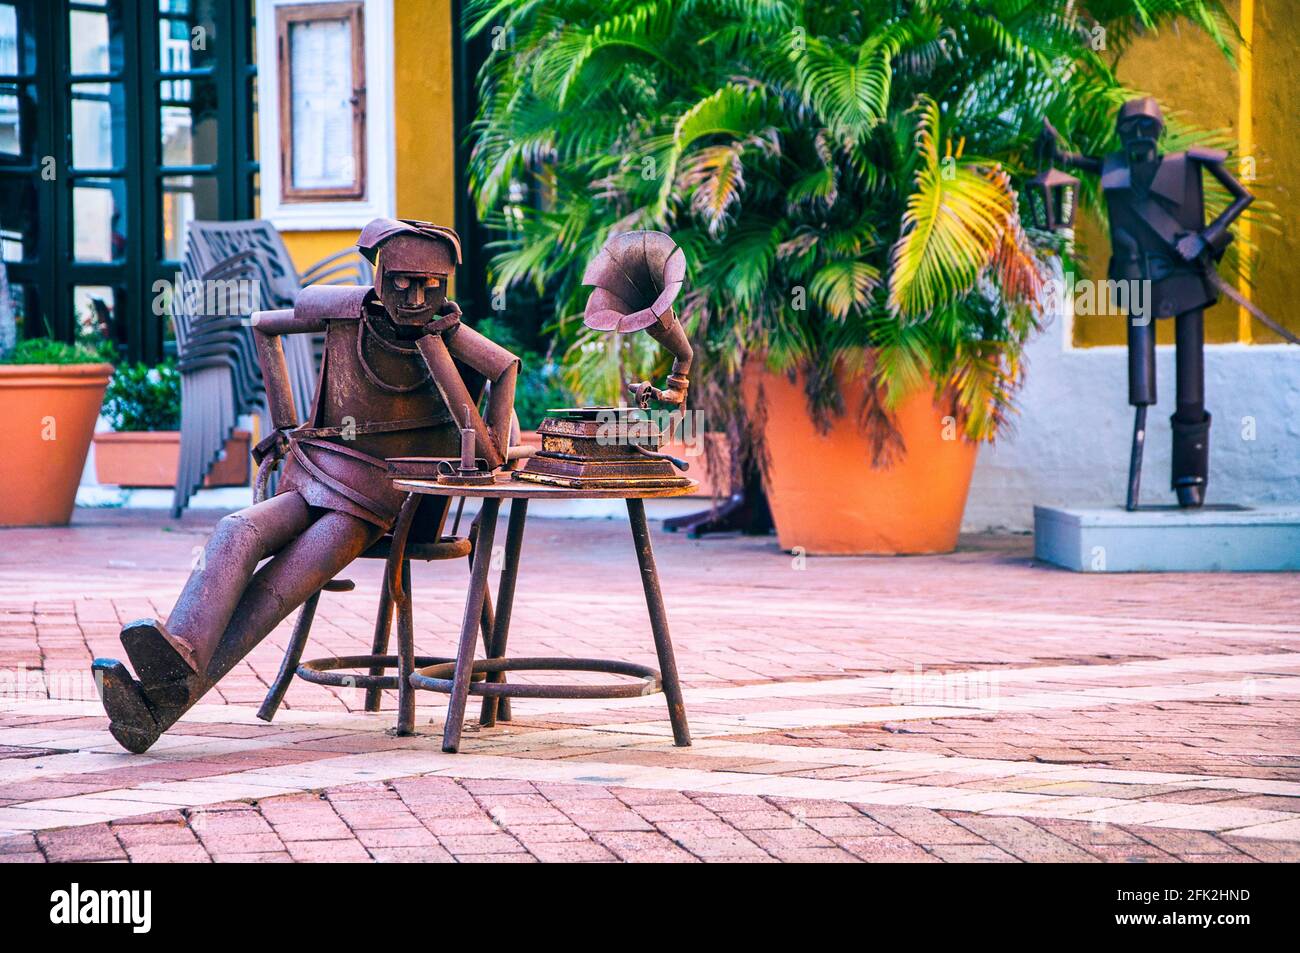 Œuvres d'art dans les rues de la ville fortifiée. Cartagena, Colombie. Banque D'Images